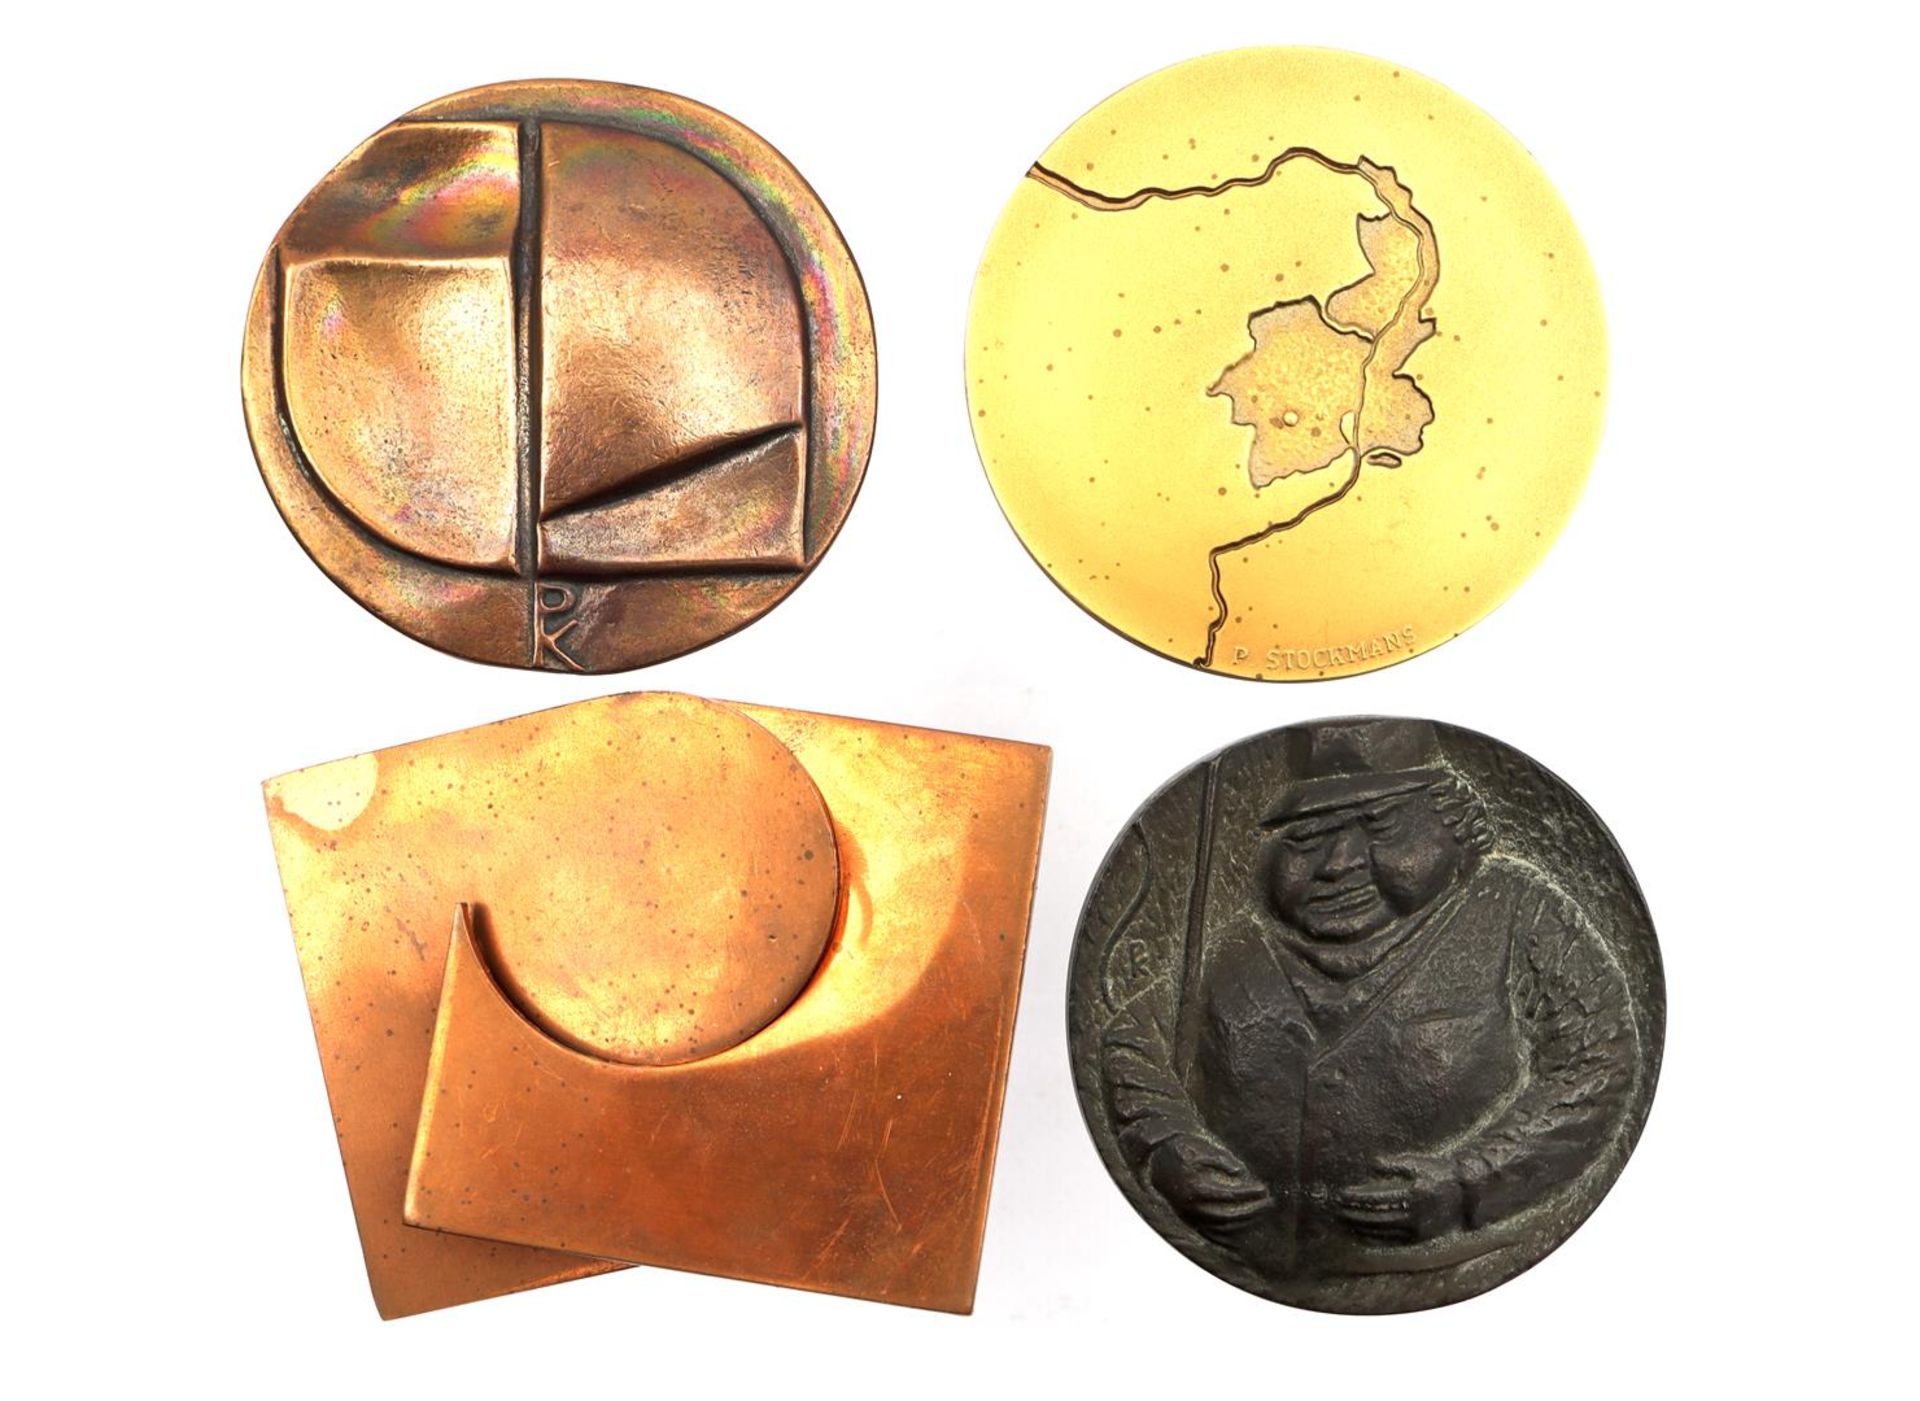 4 bronze medals